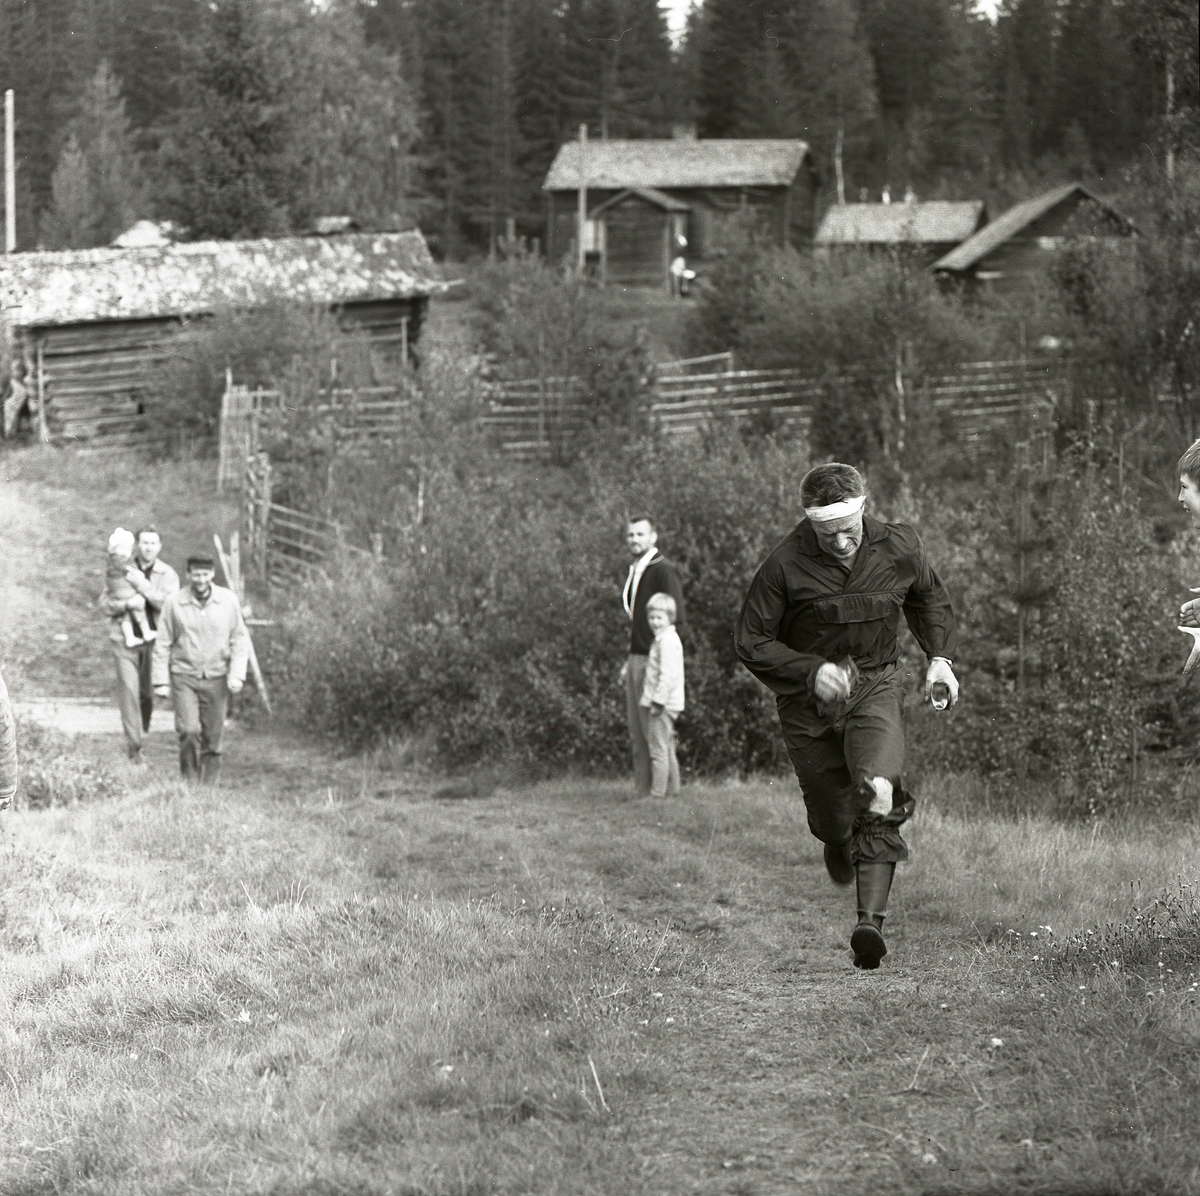 En man kommer springande upp för en backe i Svartbo 1963. Han deltar i distriksmästerskapen i orientering och en liten publik bestående av barn och tre män hejar på honom. I bakgrunden står ett fäbodlandskap med gärdesgårdar, stugor och åkermark.